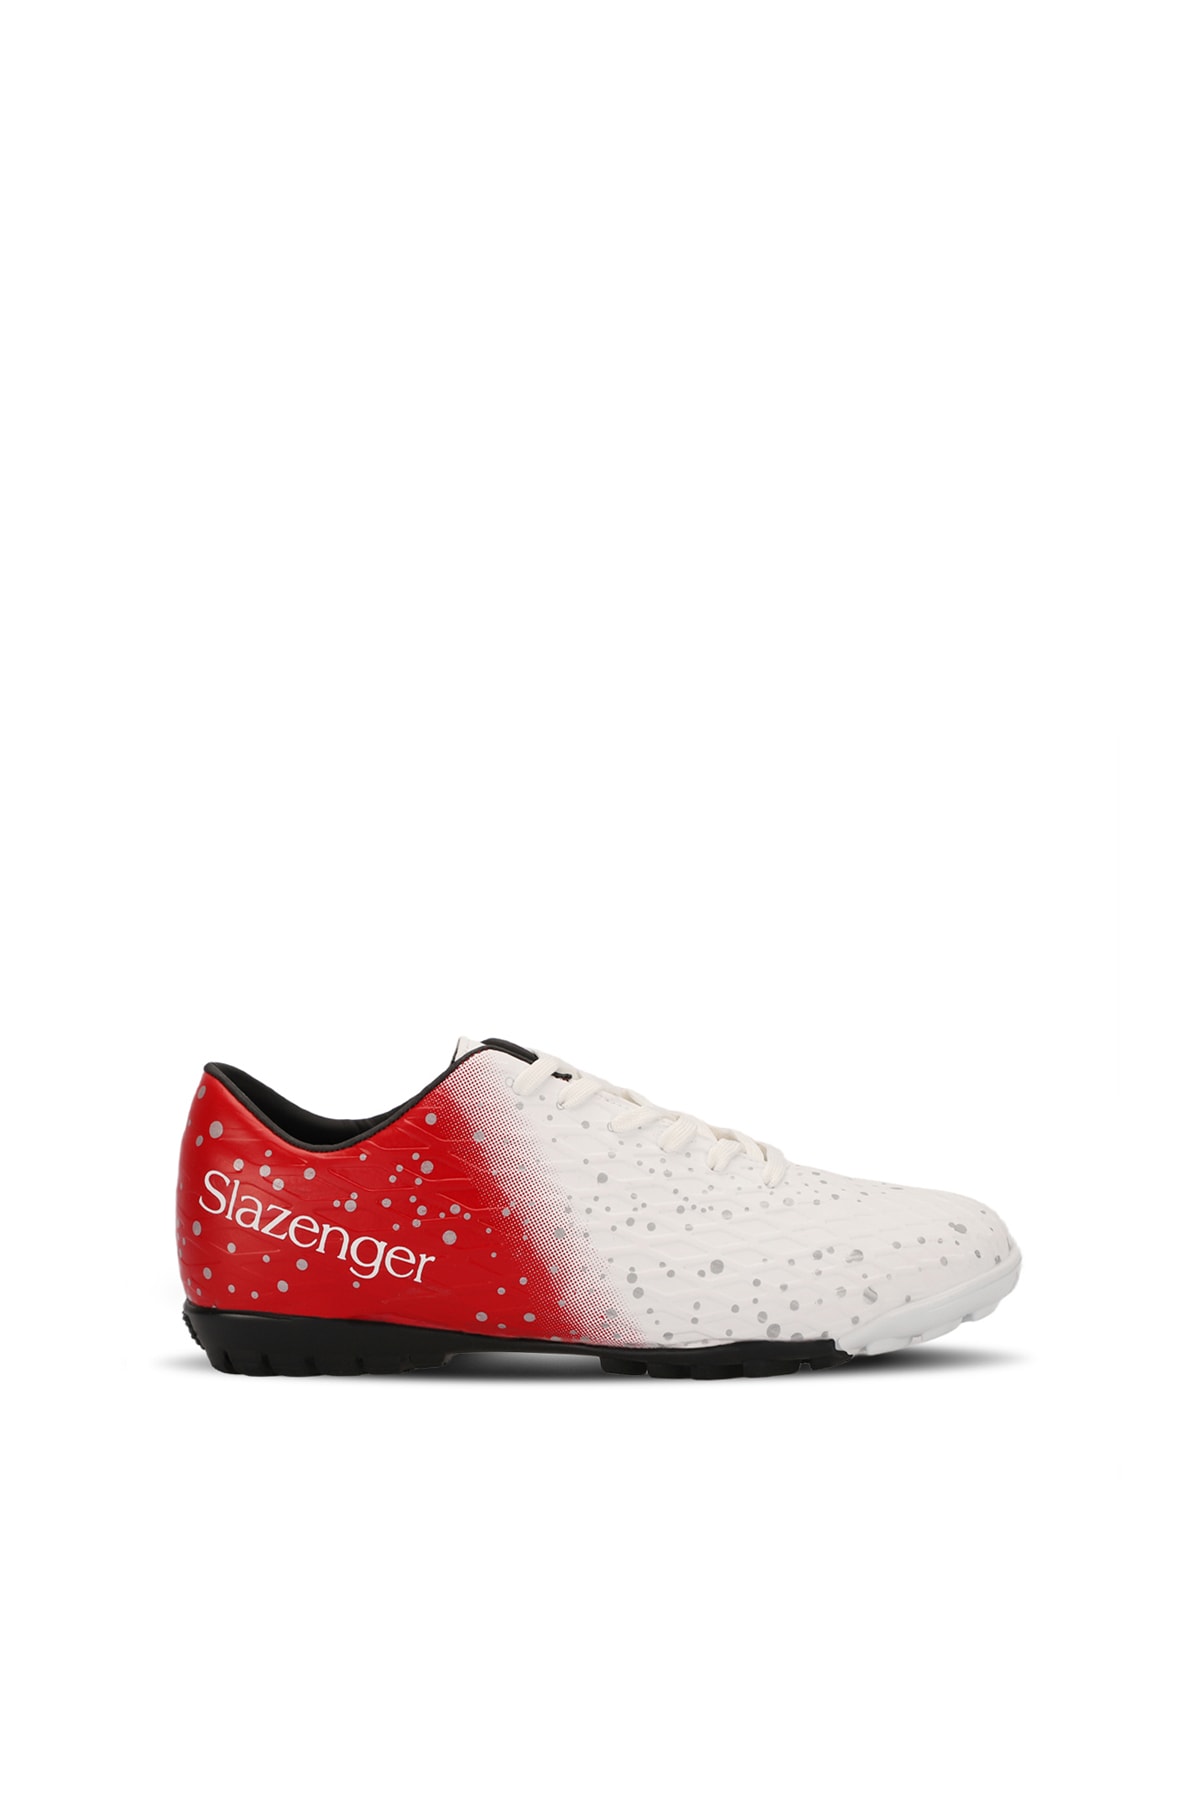 Slazenger Hania Hs Boys Football Soccer Shoes White / Red